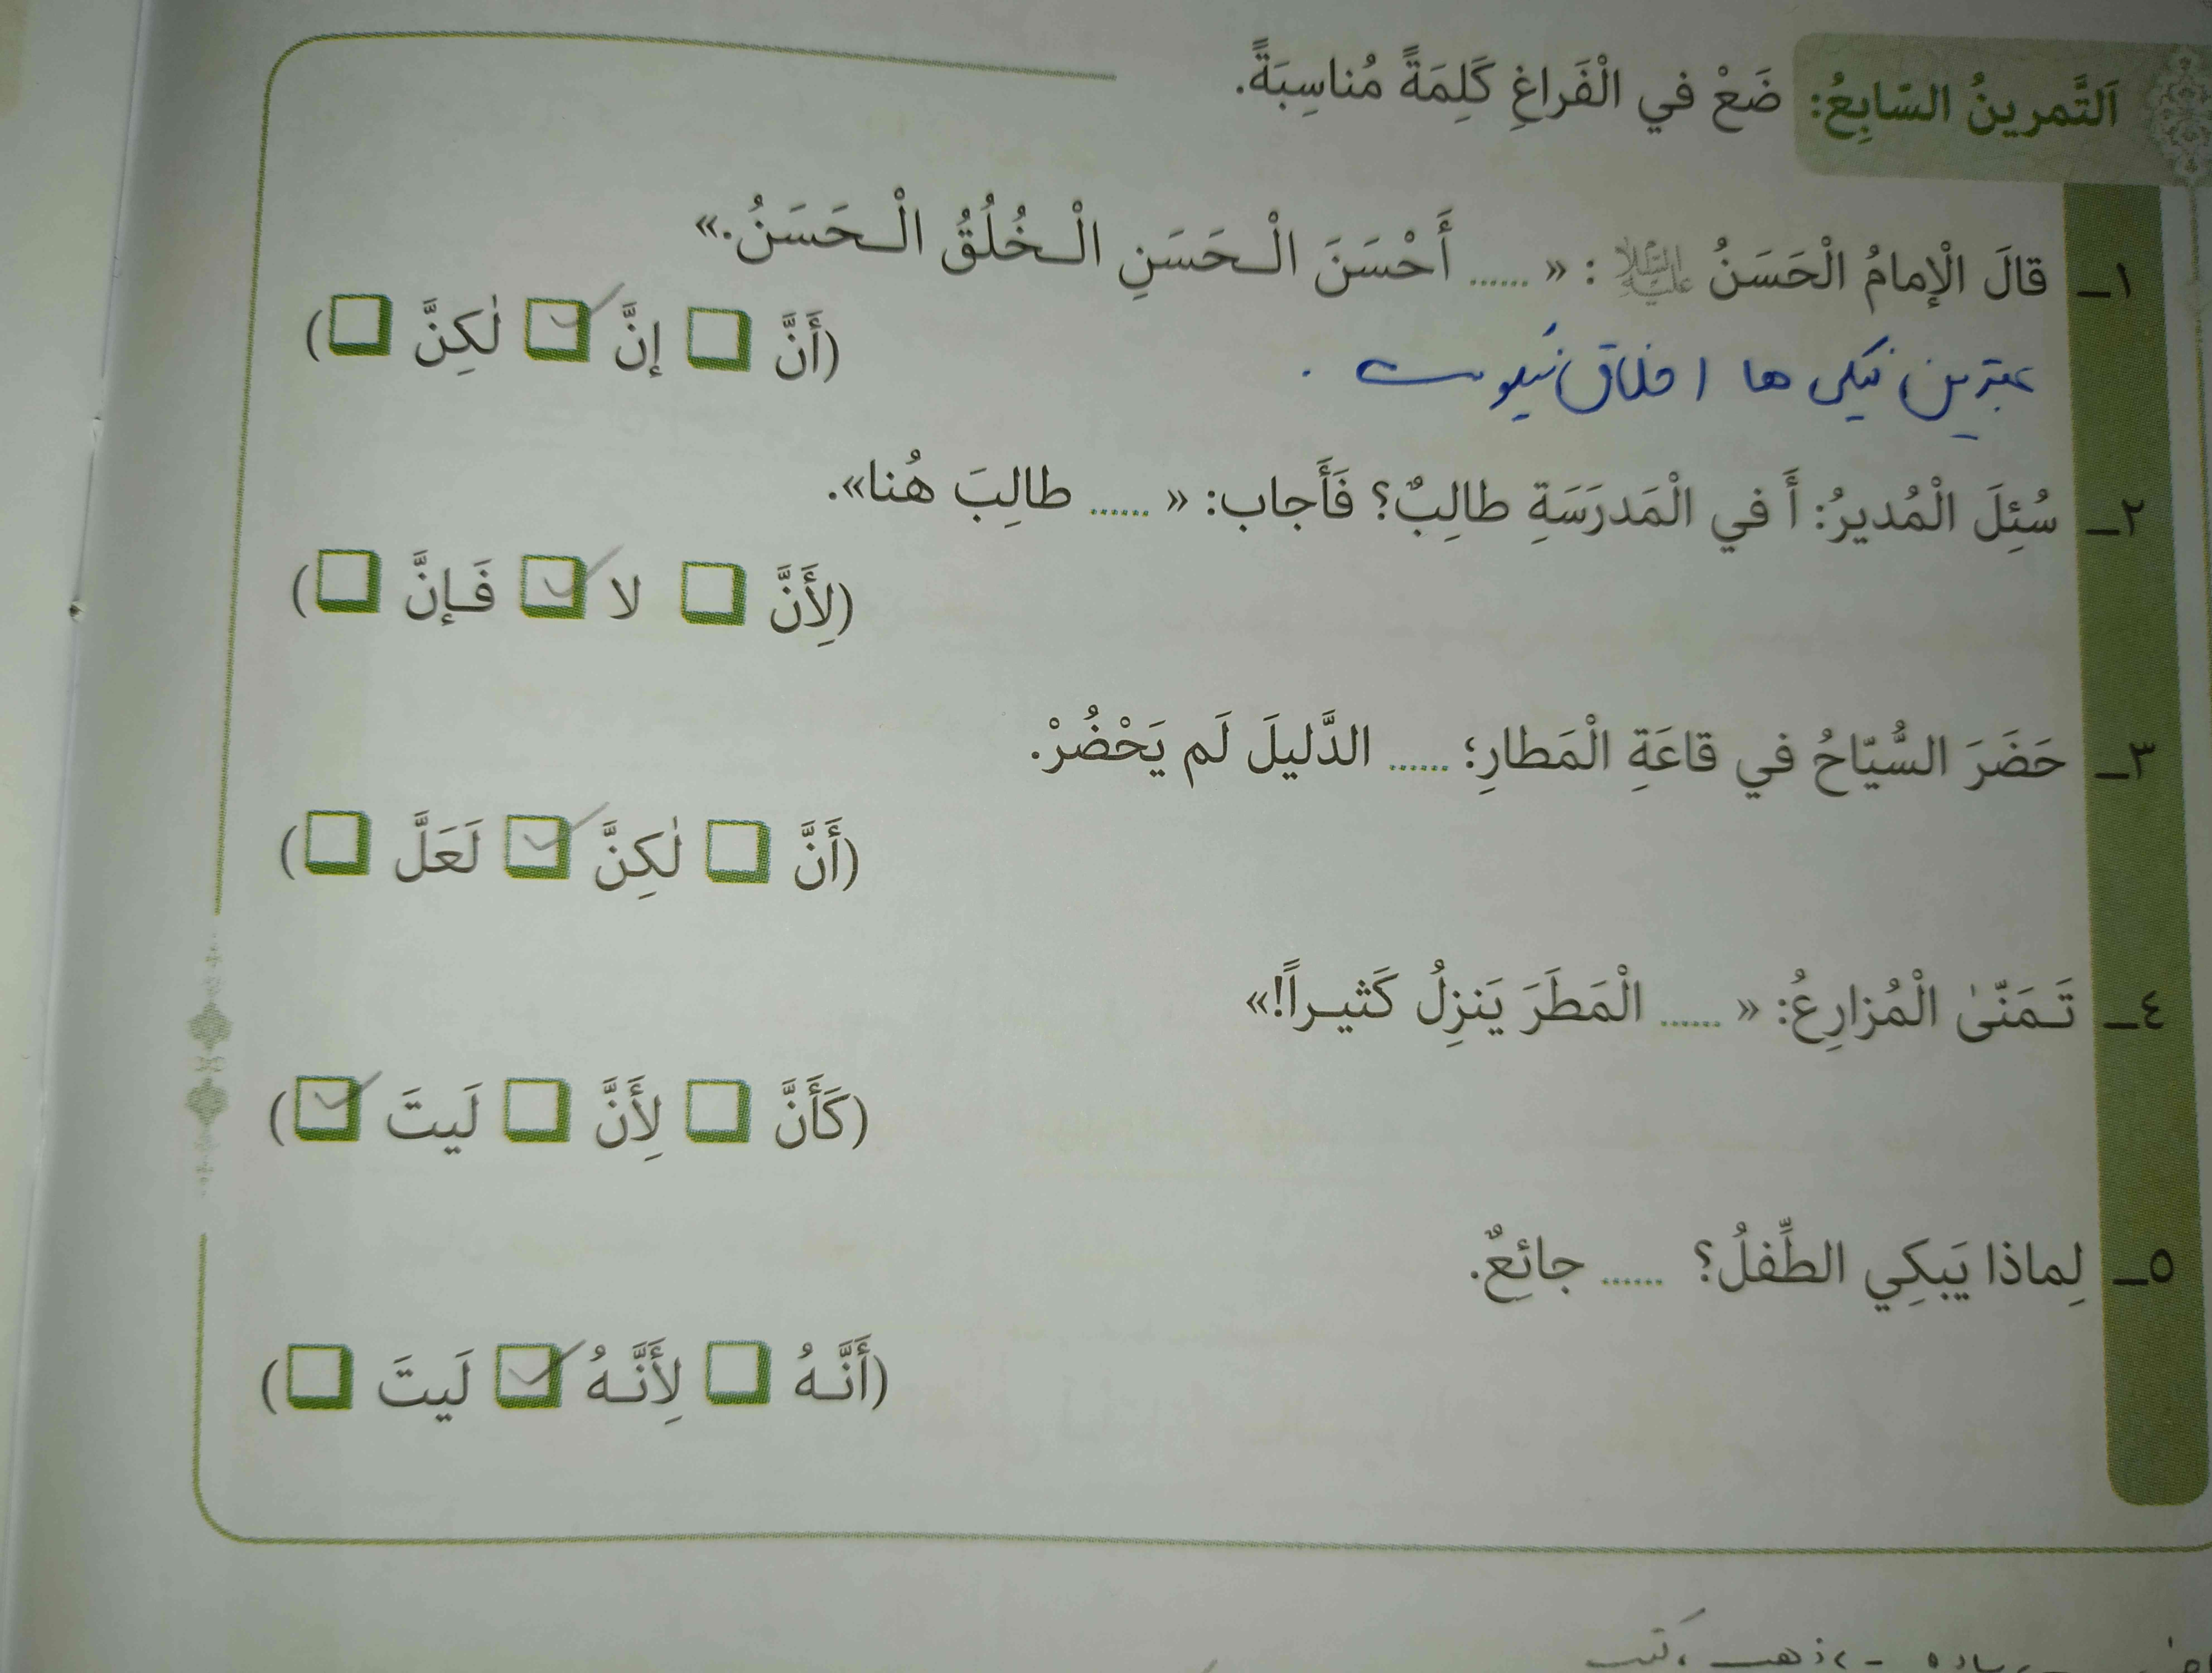 سلام دوستان صفحه ۱۶ ترجمه تمرین ۷ رو کی داره